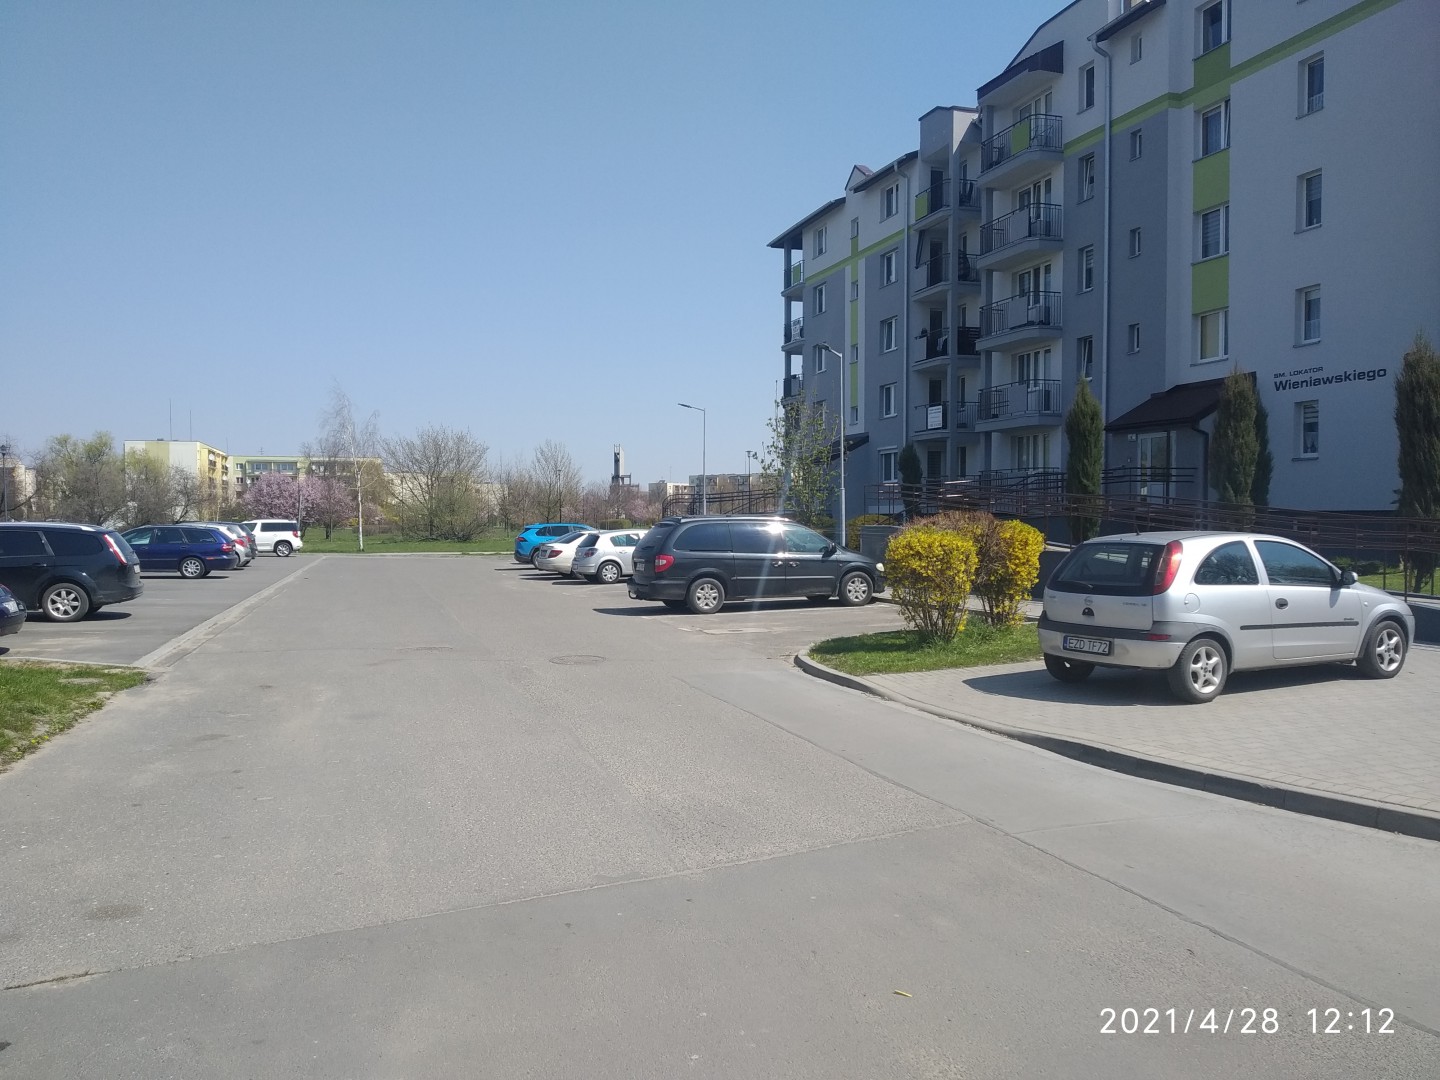 Na zdjęciu widać uliczkę między blokami i parkujące samochody